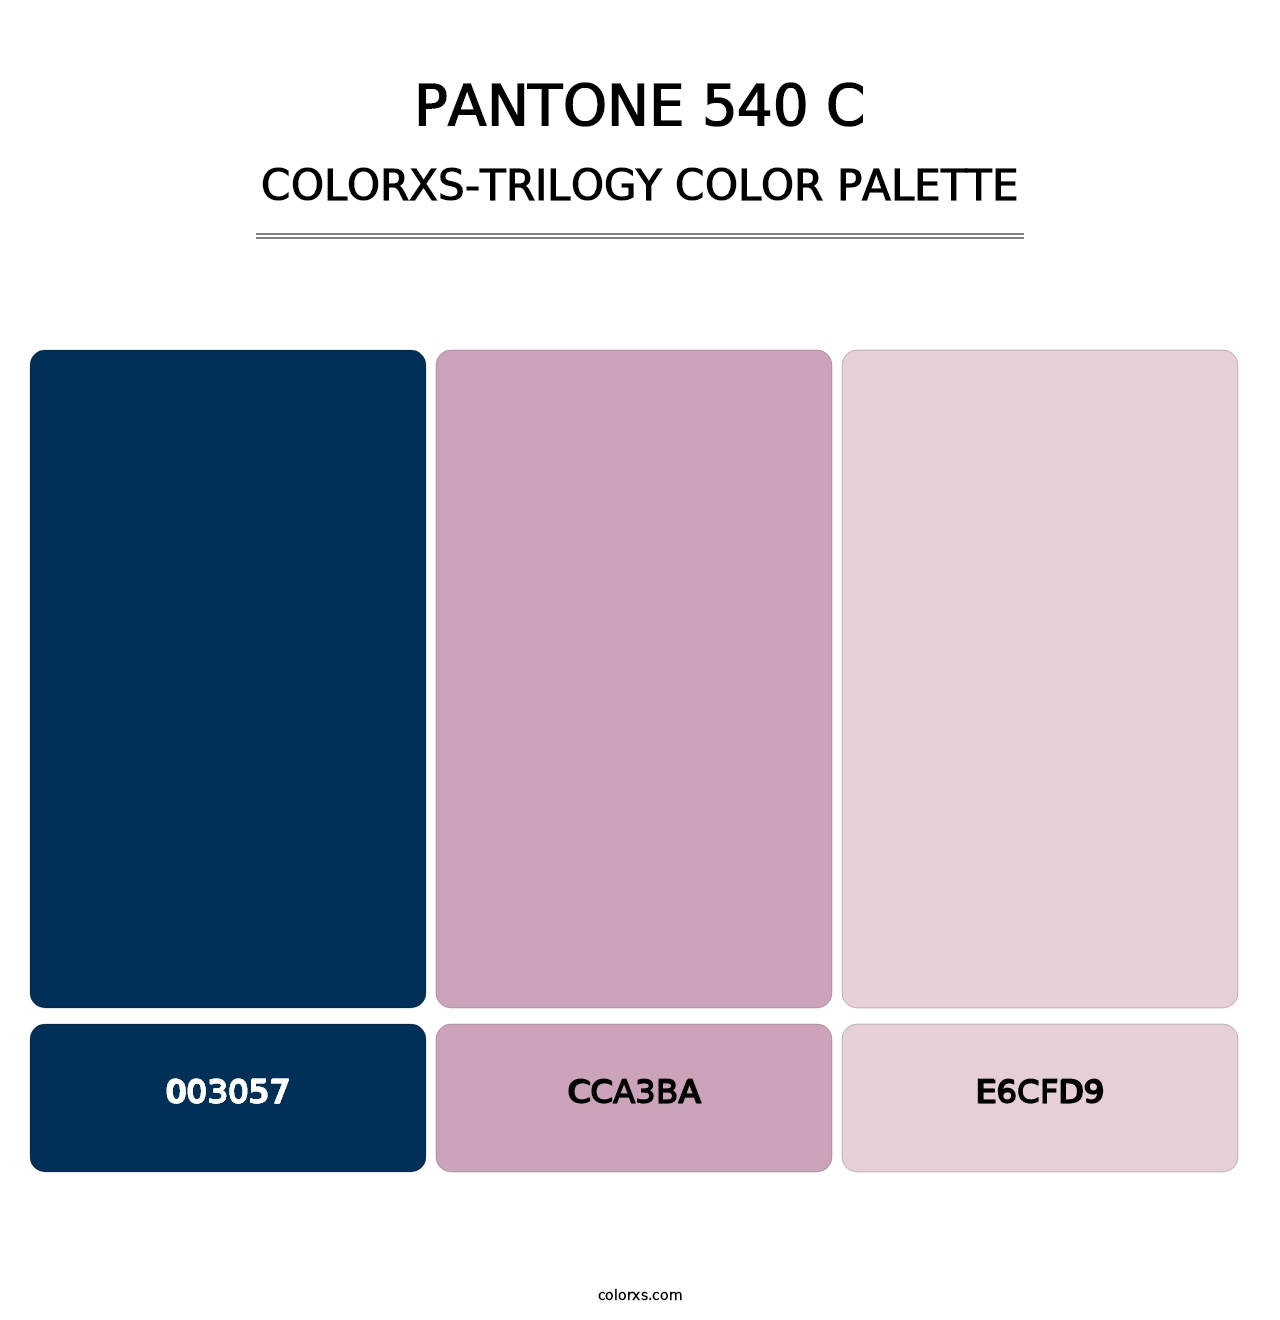 PANTONE 540 C - Colorxs Trilogy Palette